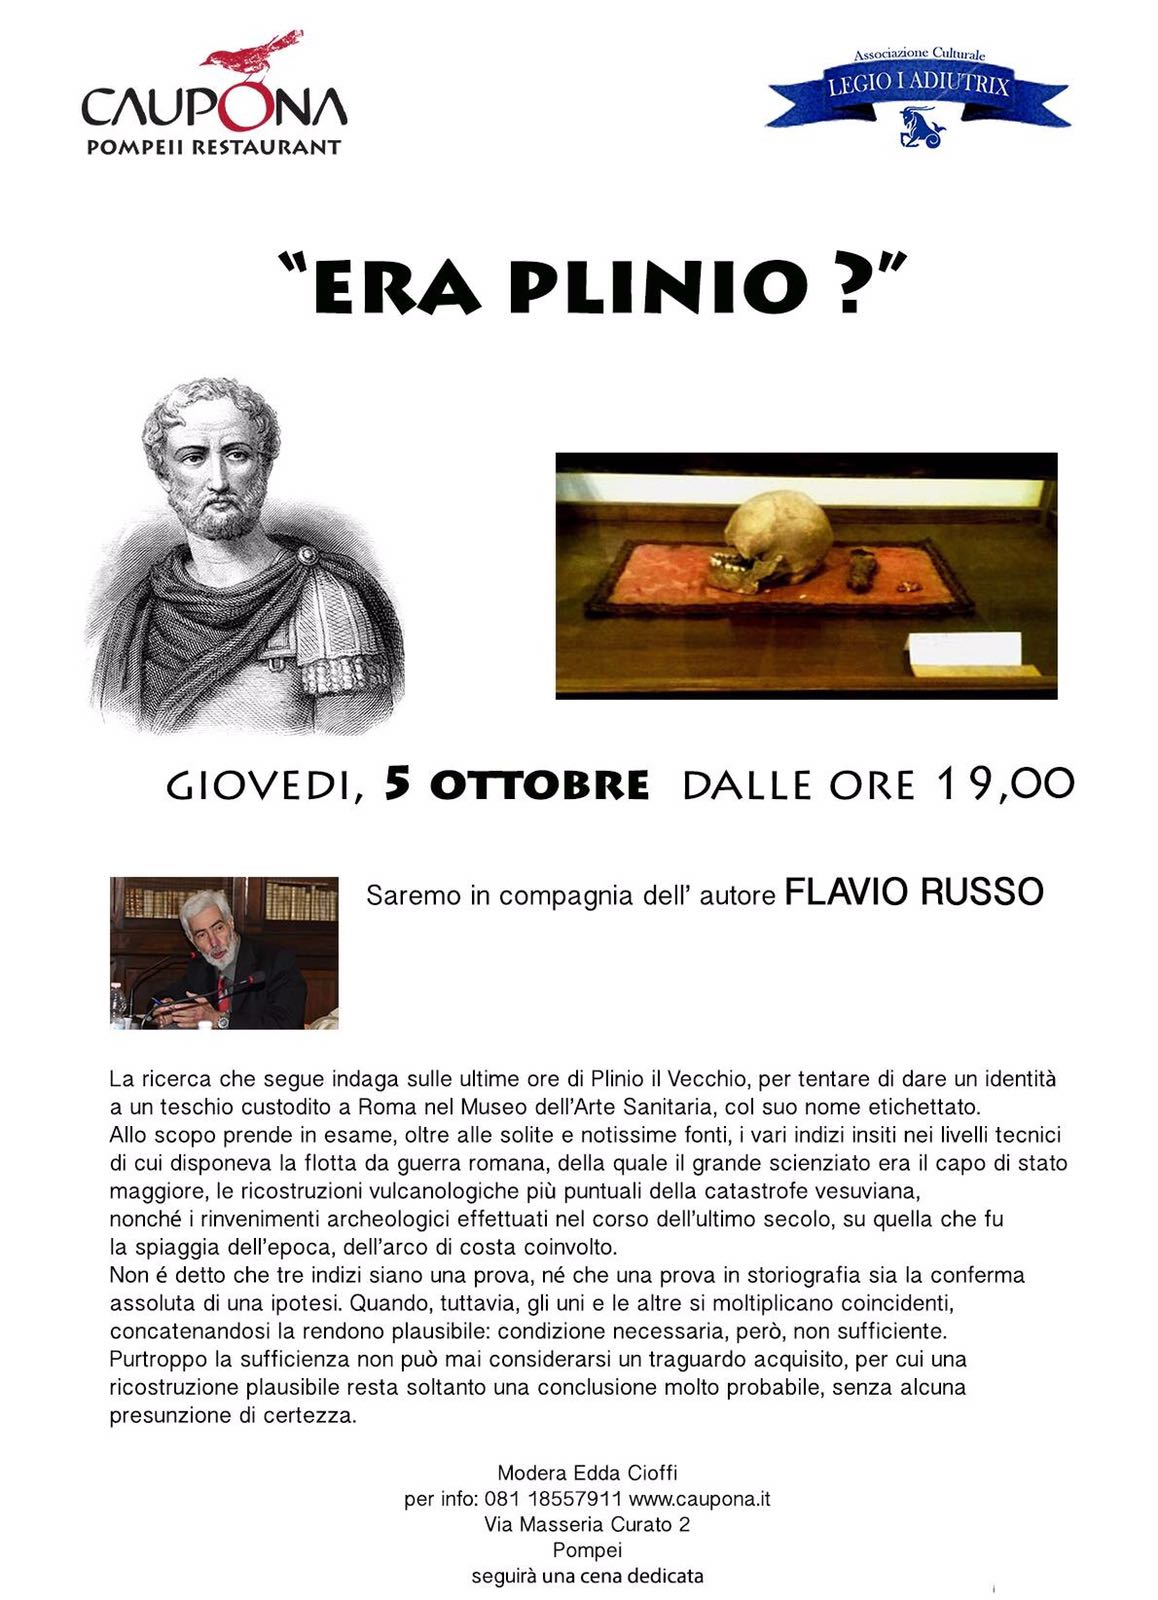  Era Plinio il Vecchio? incontro con Flavio Russo a Pompei presso l’archeo-ristorante “Caupona”